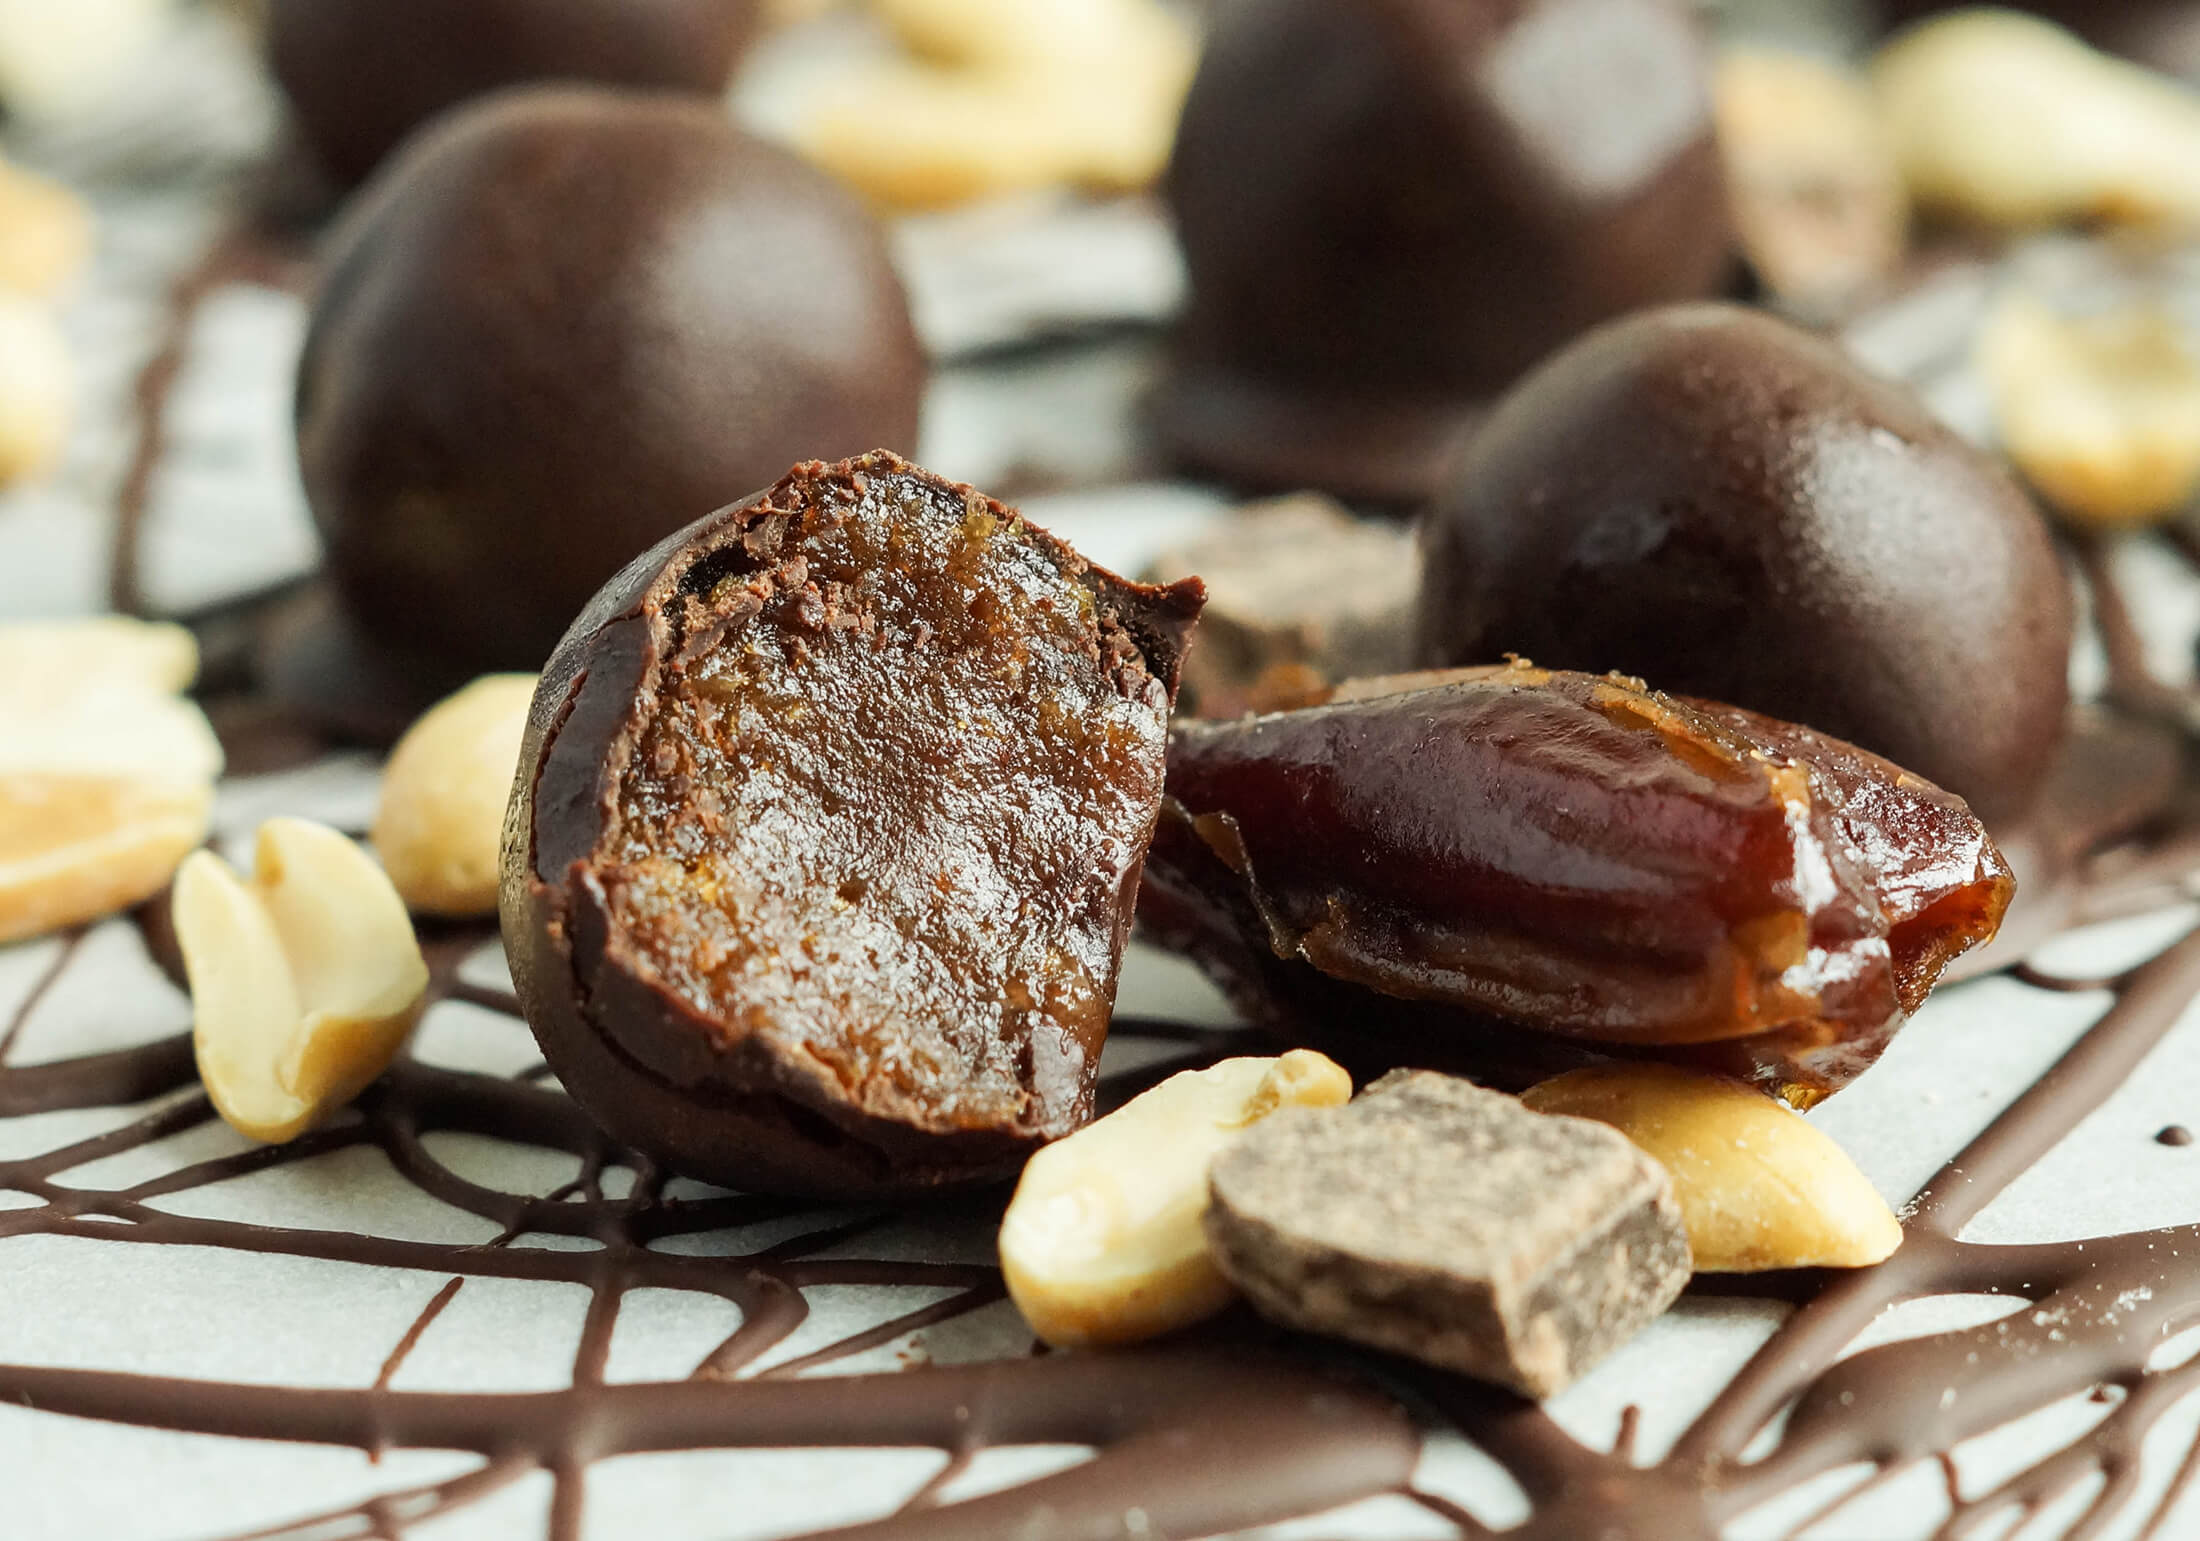 صادرات انواع شکلات خرمایی به ترکیه